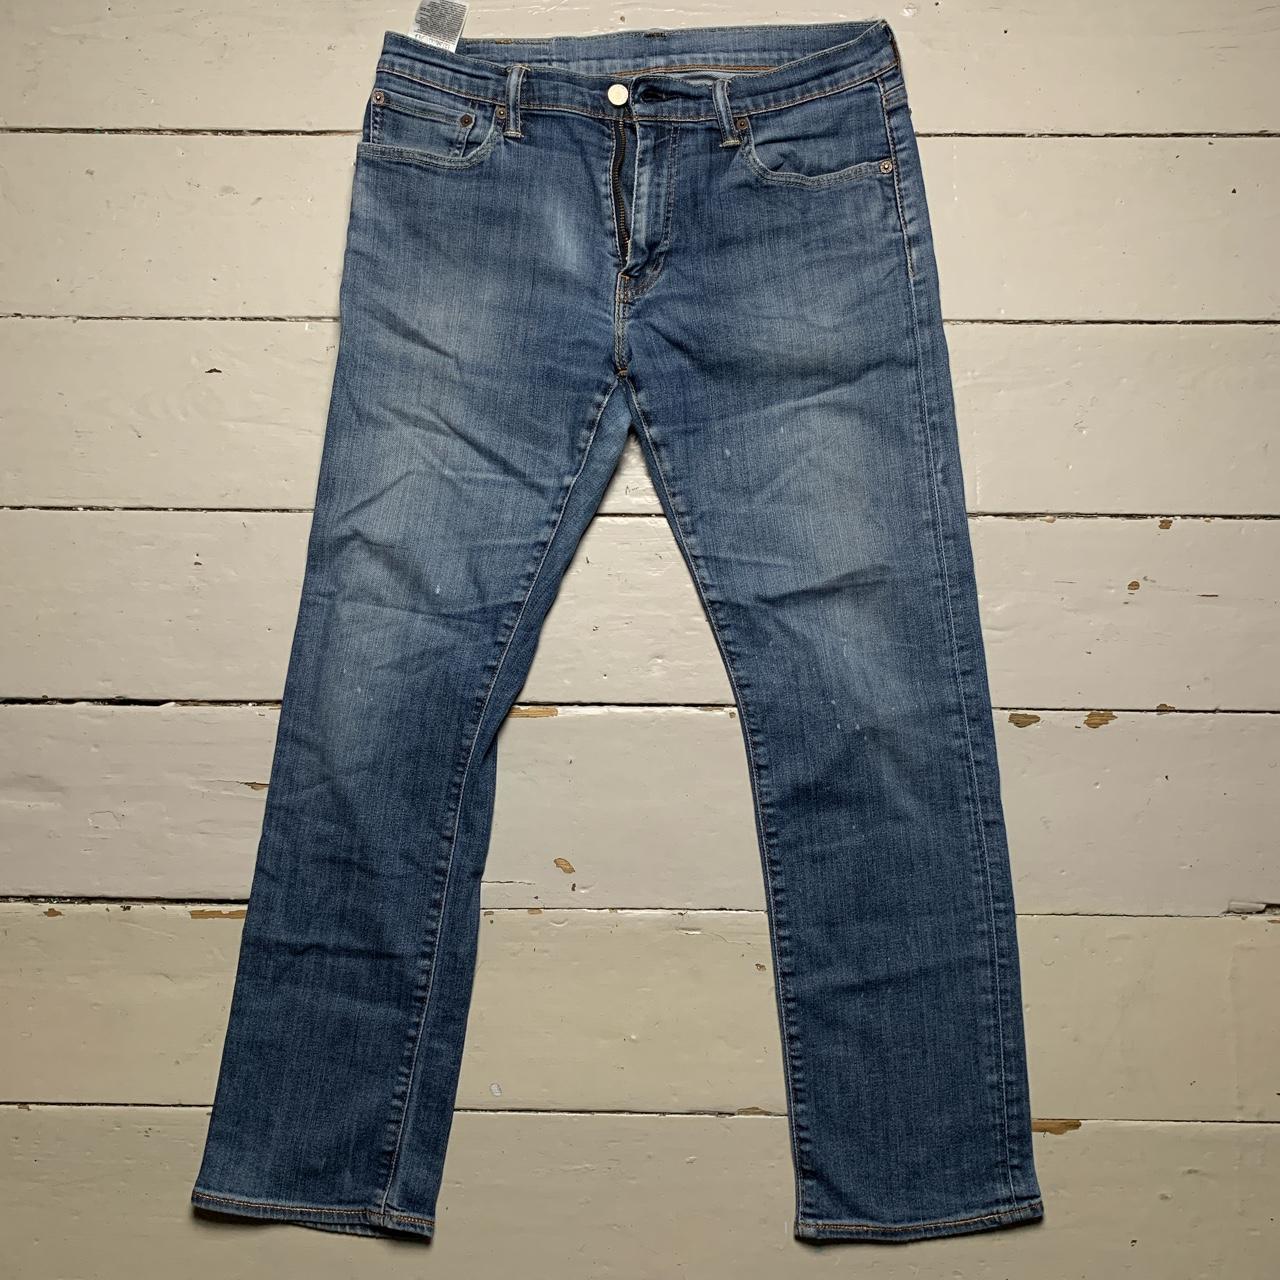 Levis 504 Light Blue Jeans